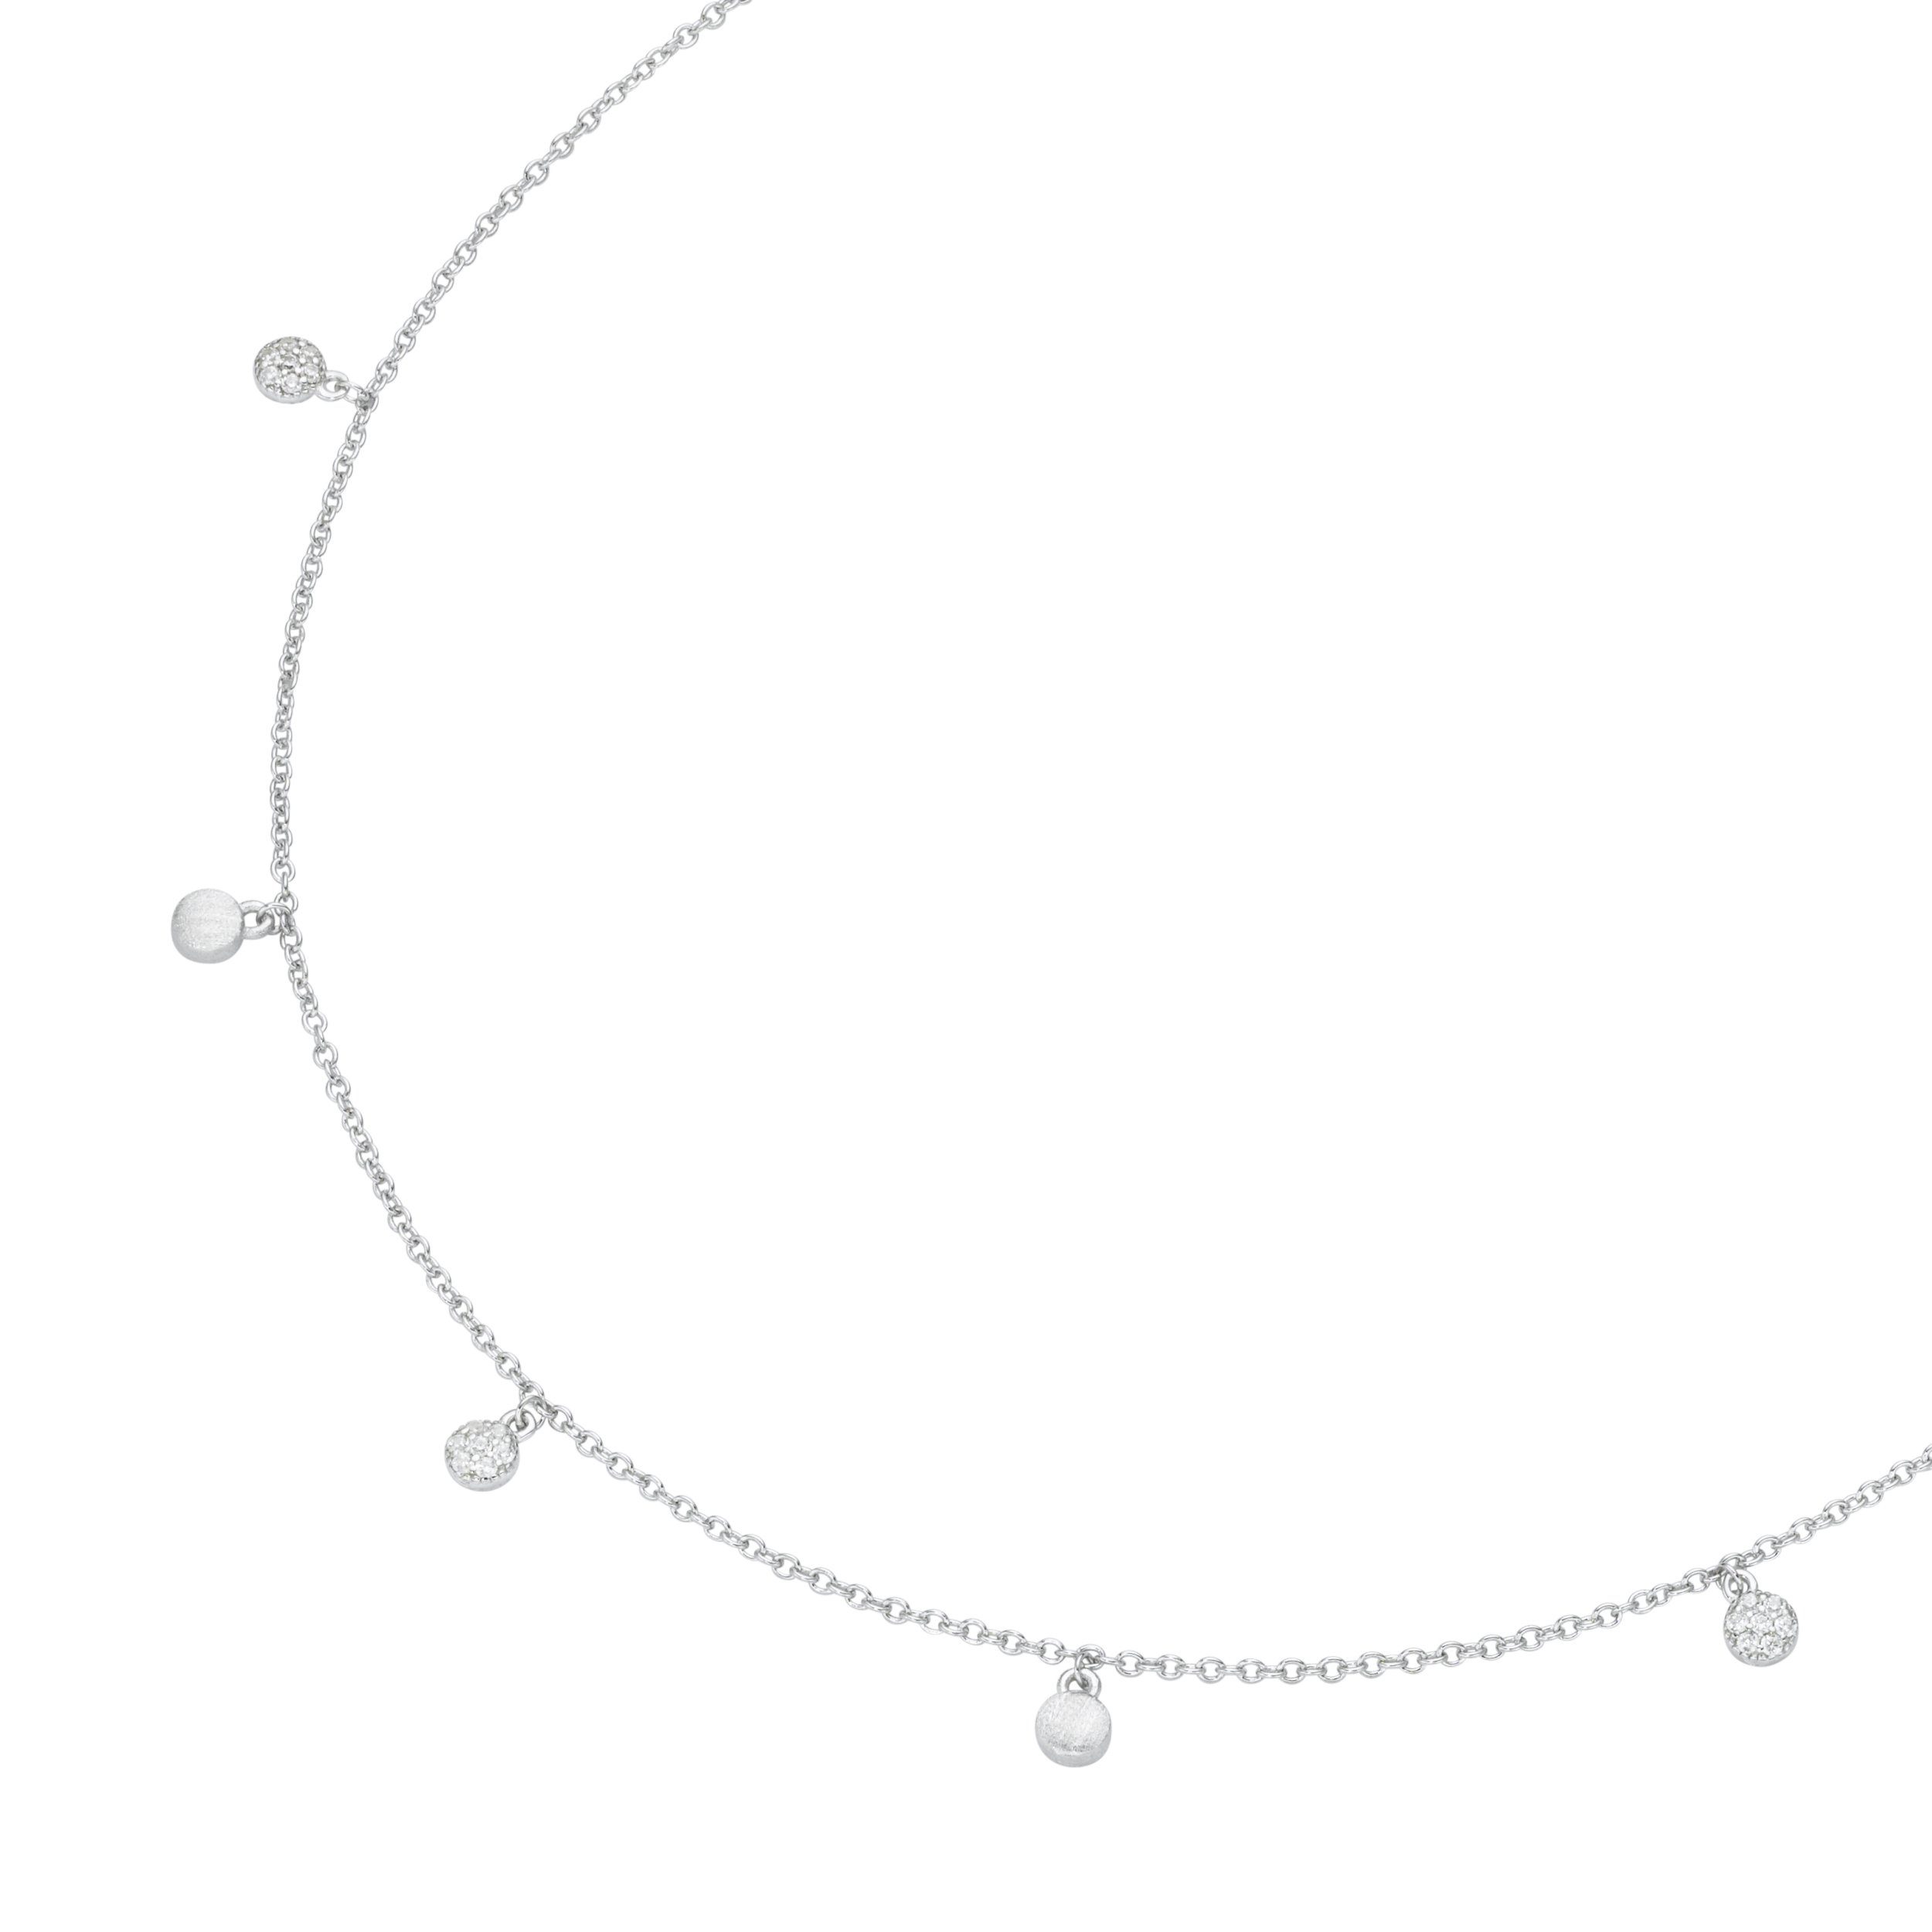 GIORGIO MARTELLO MILANO Collier mit 7 Behängen, weißen Zirkonia und matt, Silber  925, Ankerkette ca. 45 cm, verstellbar (42 + 3 cm), Karabiner